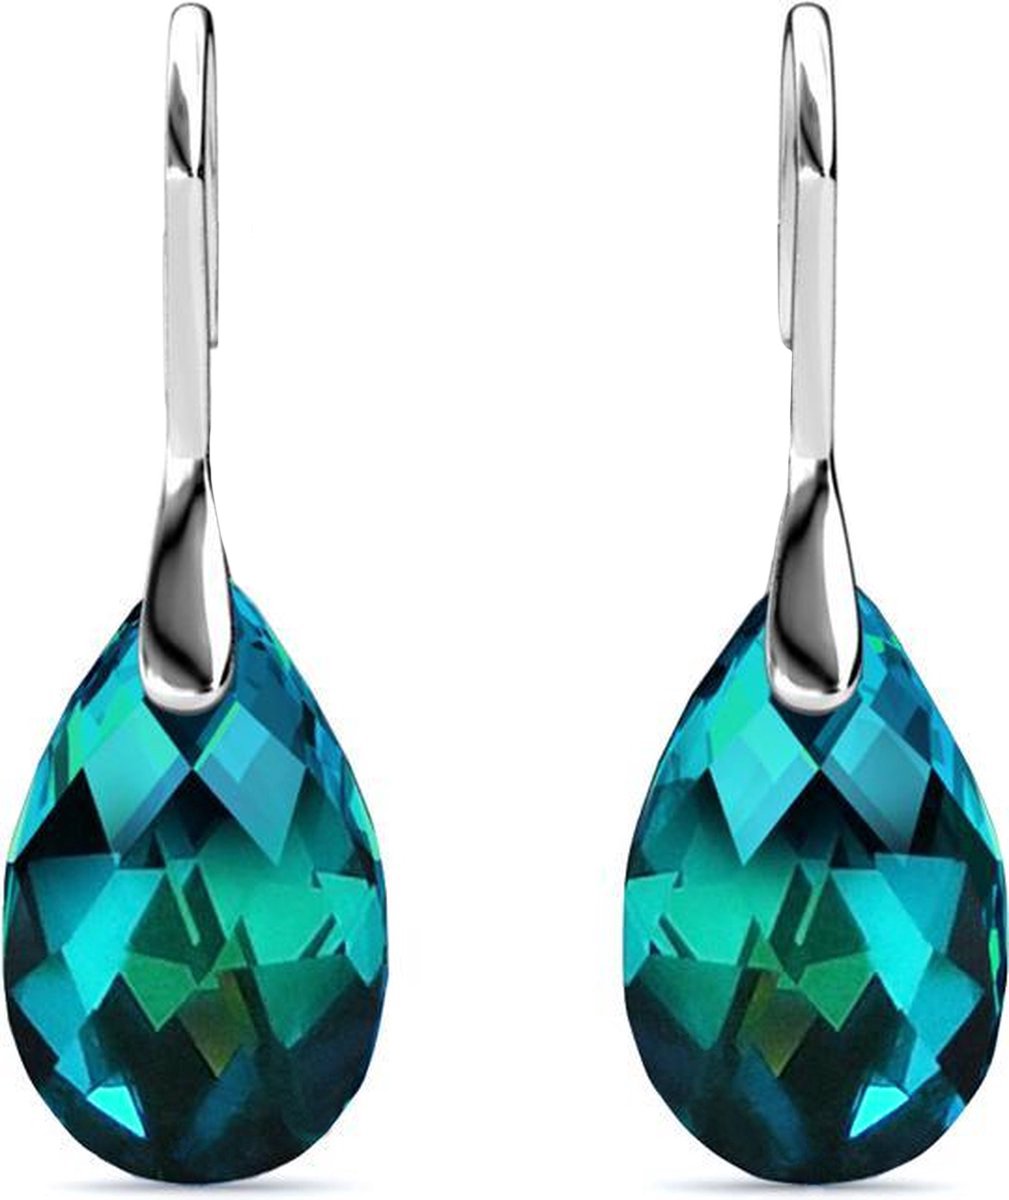 Shoplace Oorbellen dames met Swarovski kristallen - Druppel - 18K Witgoud verguld - Oorhangers - Swarovski oorbellen - Cadeauverpakking - Blauw/Groen - Valentijn cadeautje voor haar